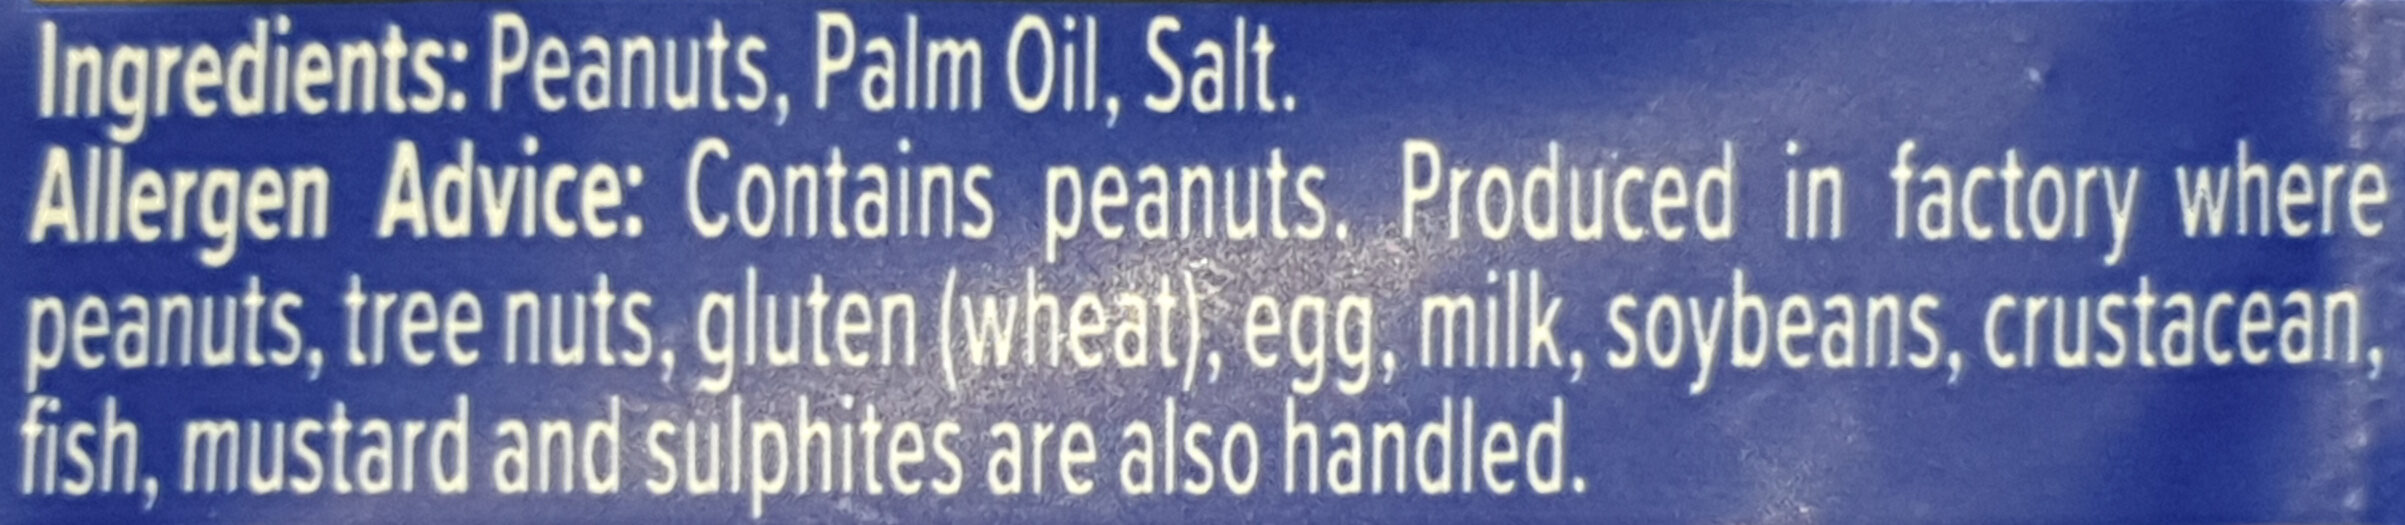 Roasted Peanuts - Ingredients